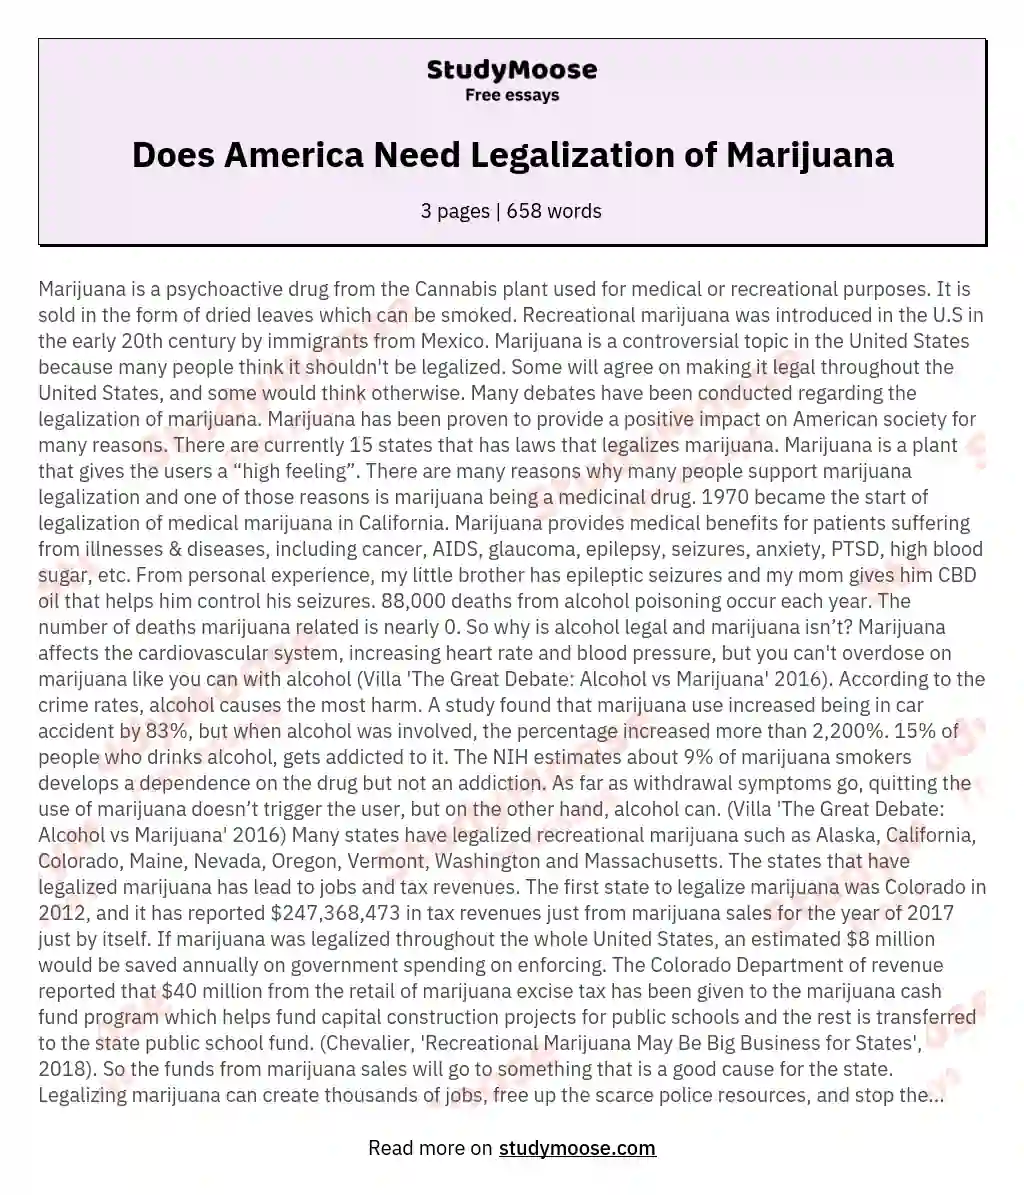 Does America Need Legalization of Marijuana essay